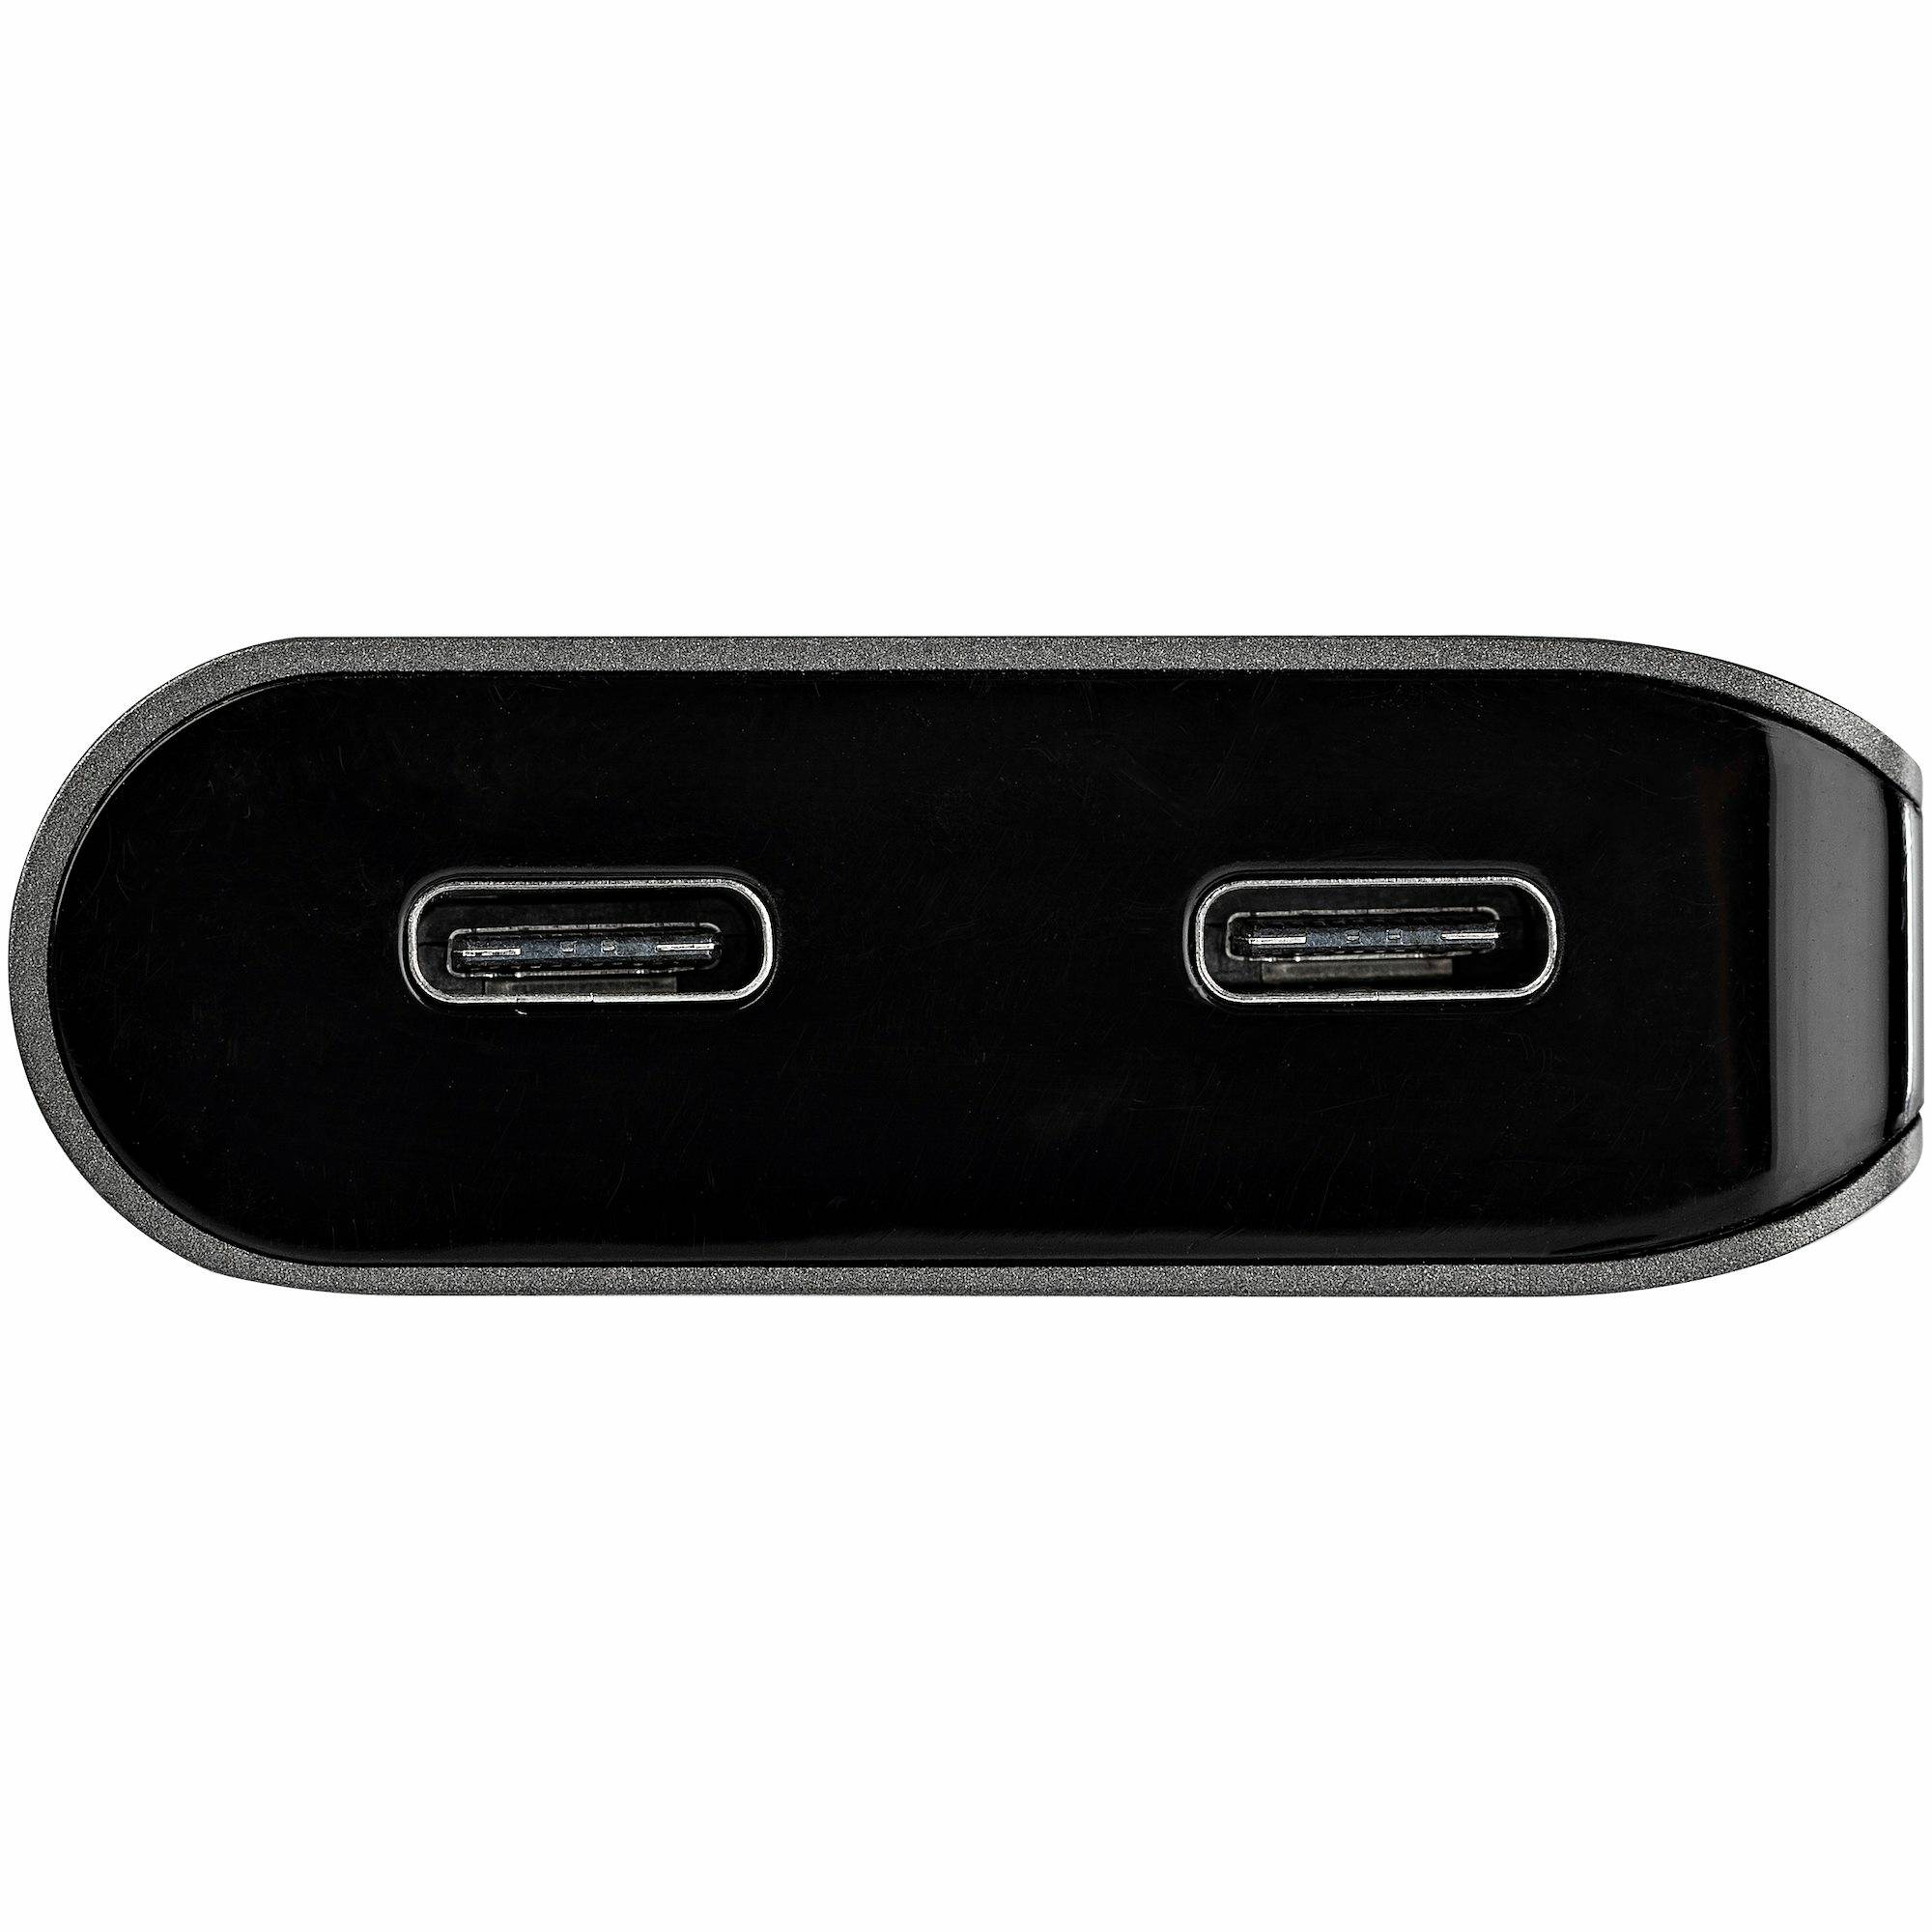 Rca Informatique - image du produit : USB C MULTIPORT ADAPTER 4K 60HZ HDMI OR MDP - 100 PD PASSTHROUGH